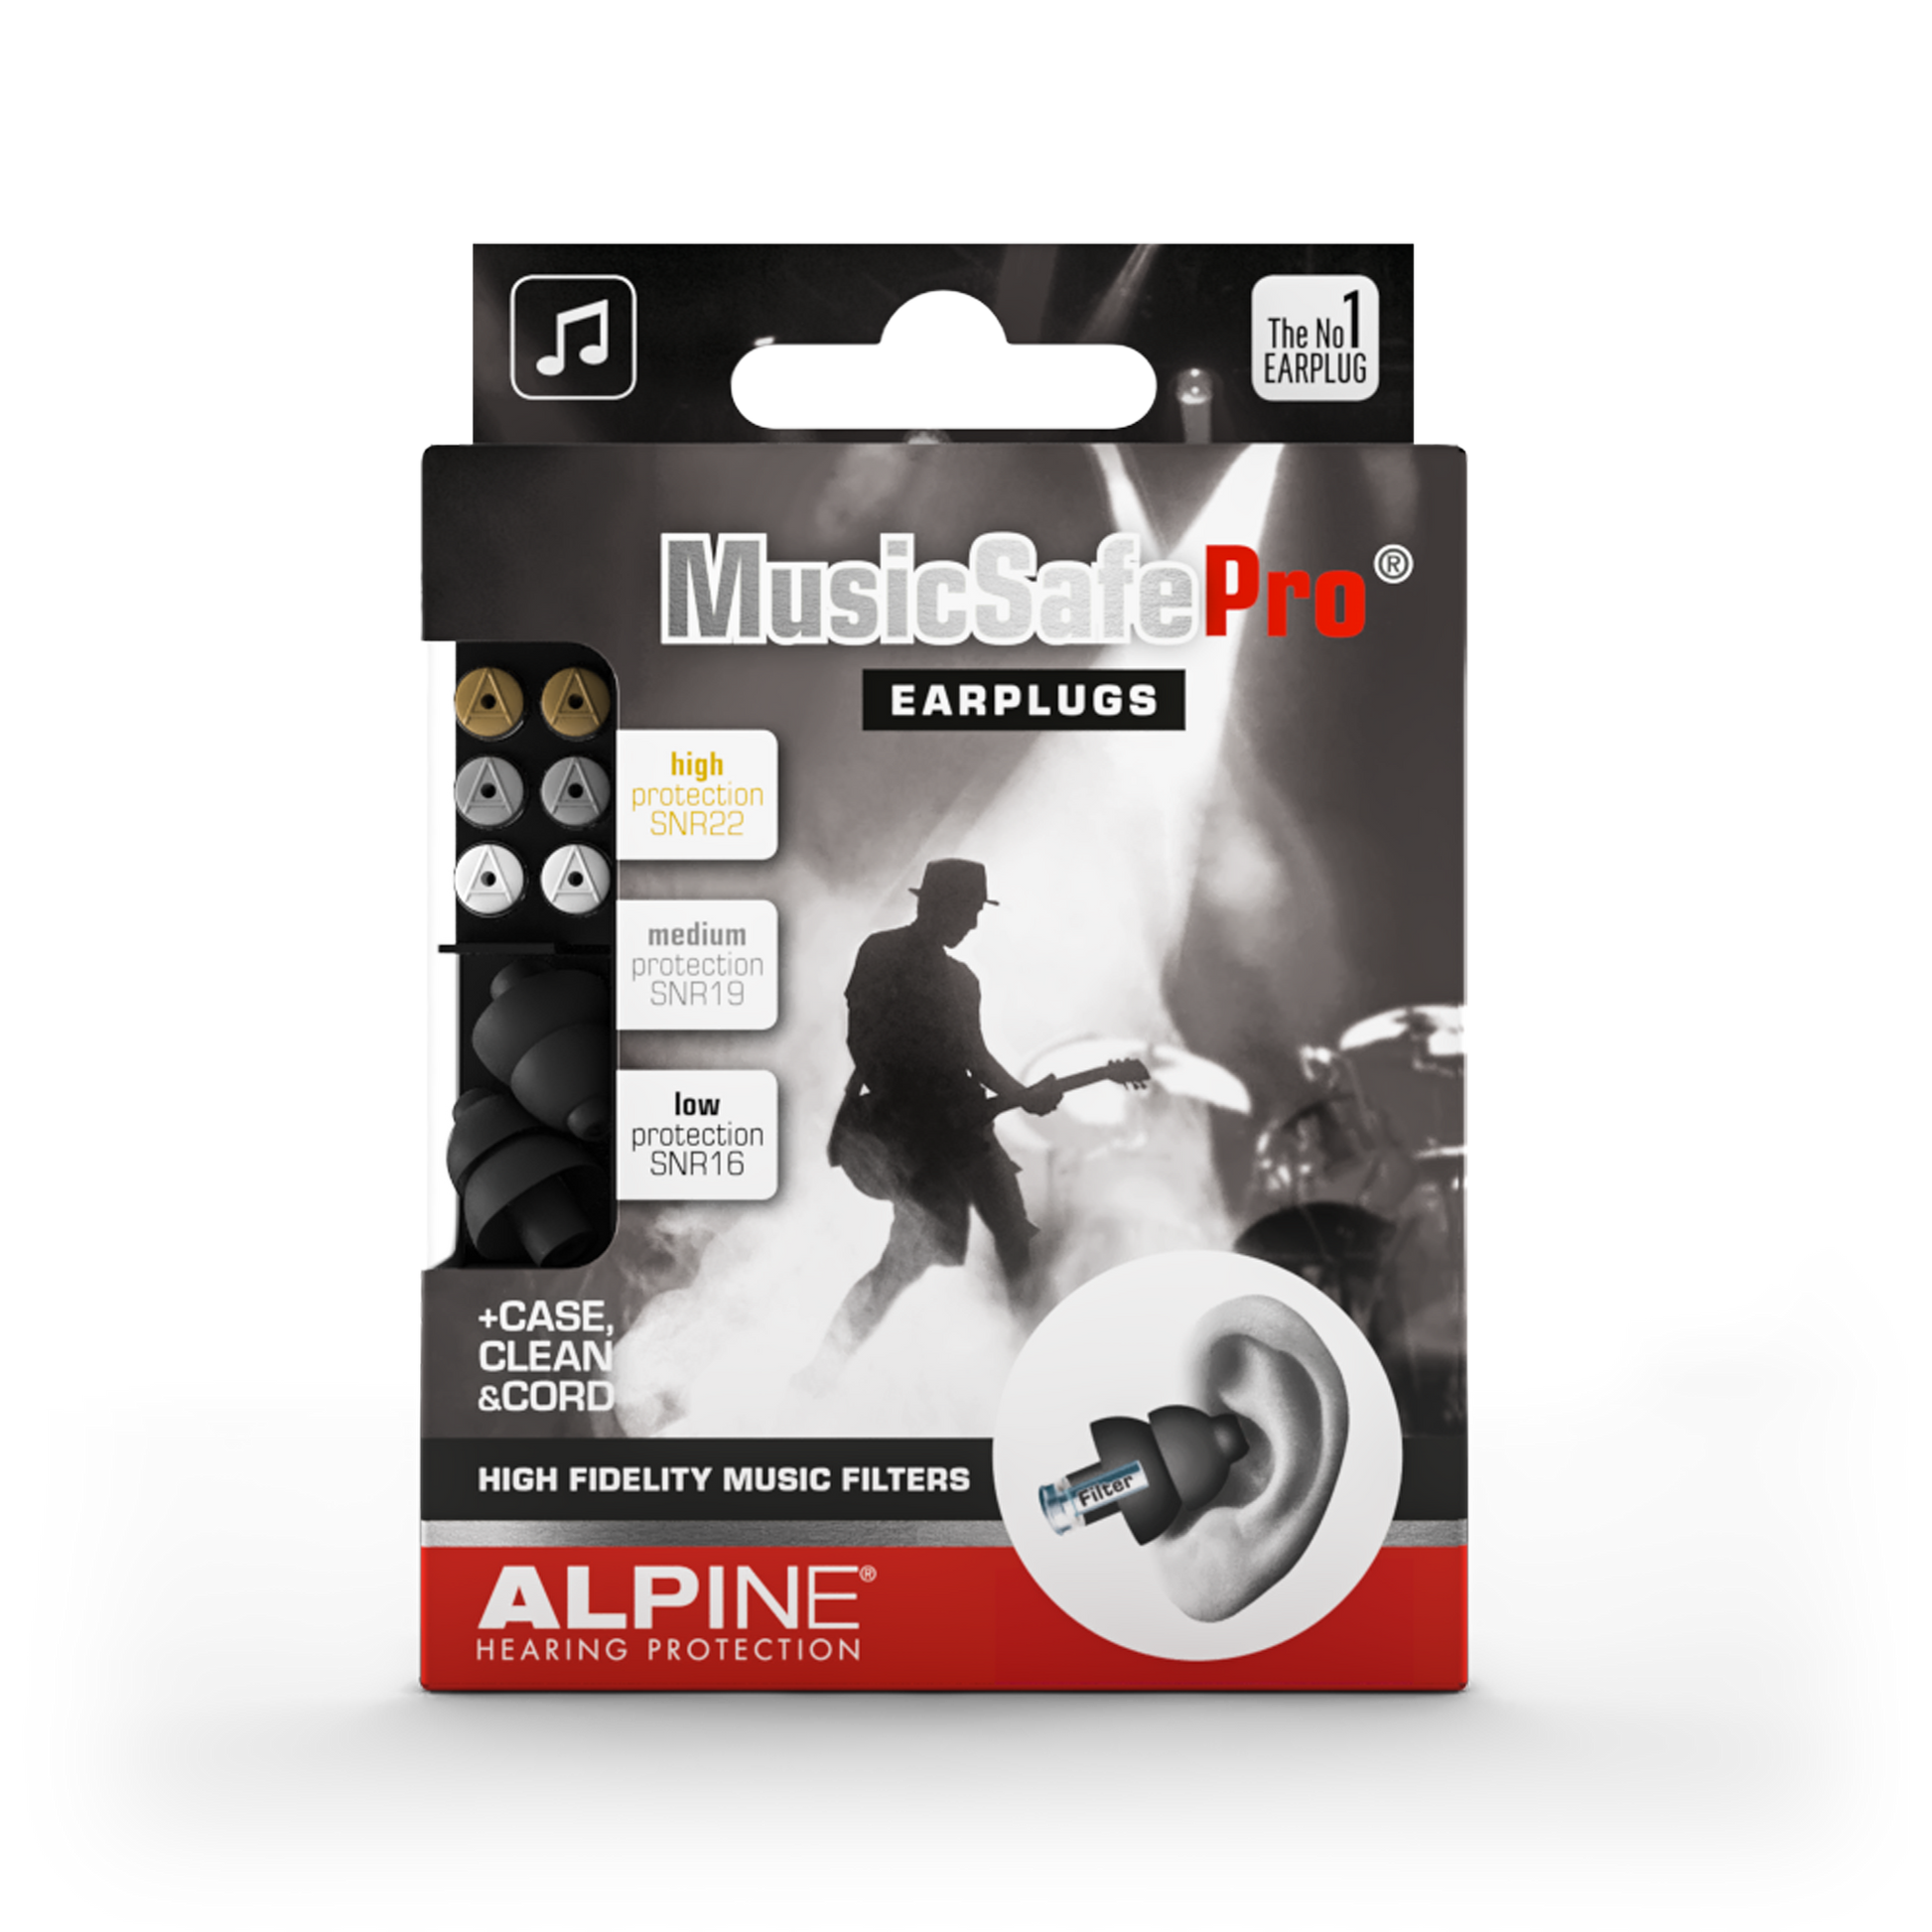 Alpine MusicSafe Pro oordoppen voor muzikanten, DJ's en producers